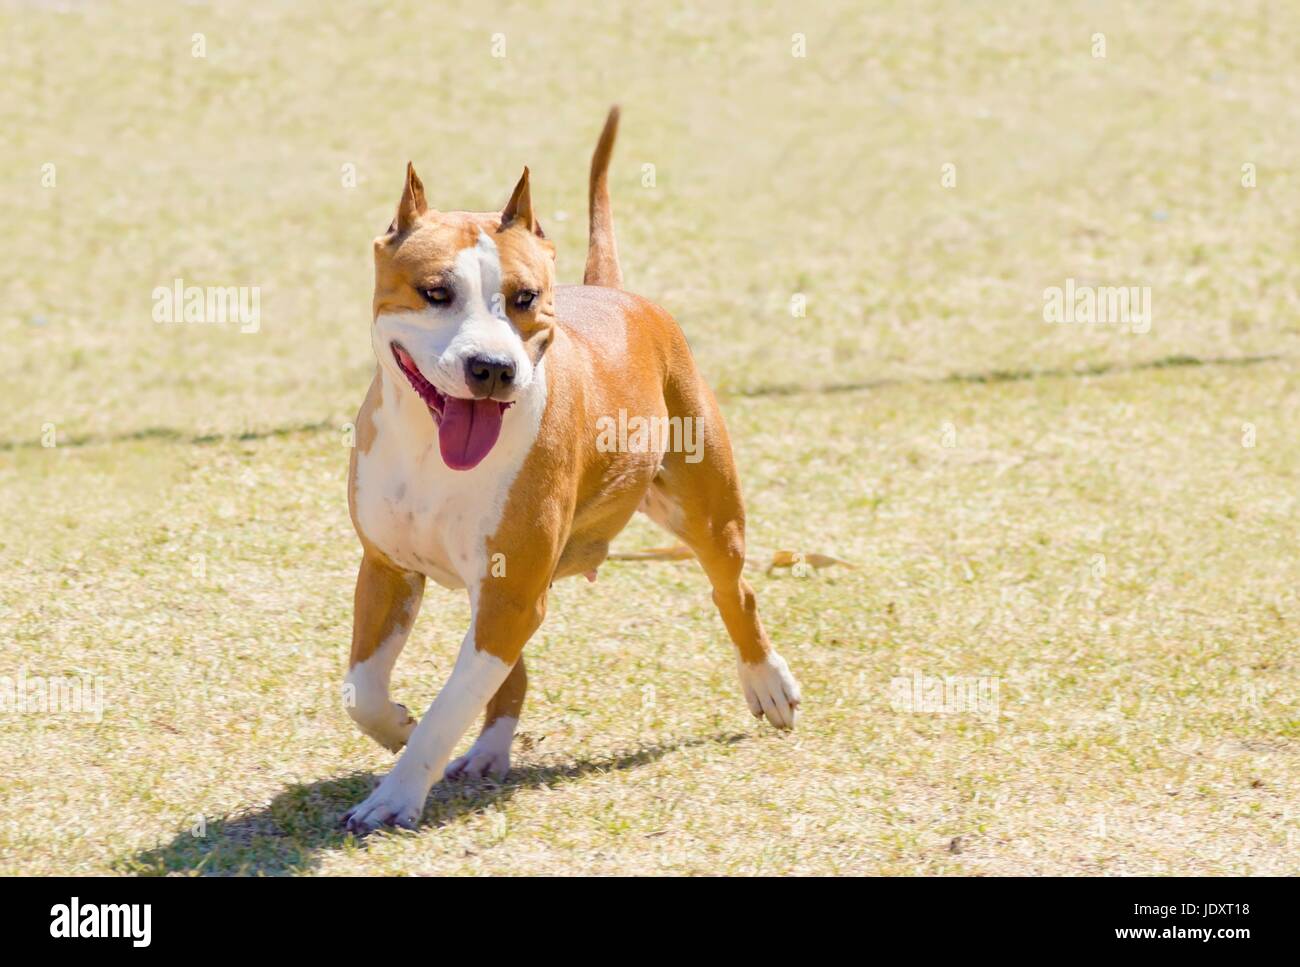 Un petit, jeune, beau, blanc et sable rouge American Staffordshire Terrier marche sur la pelouse tout en collant sa langue, et à la fois ludique et joyeux. Ses oreilles sont coupées. Banque D'Images